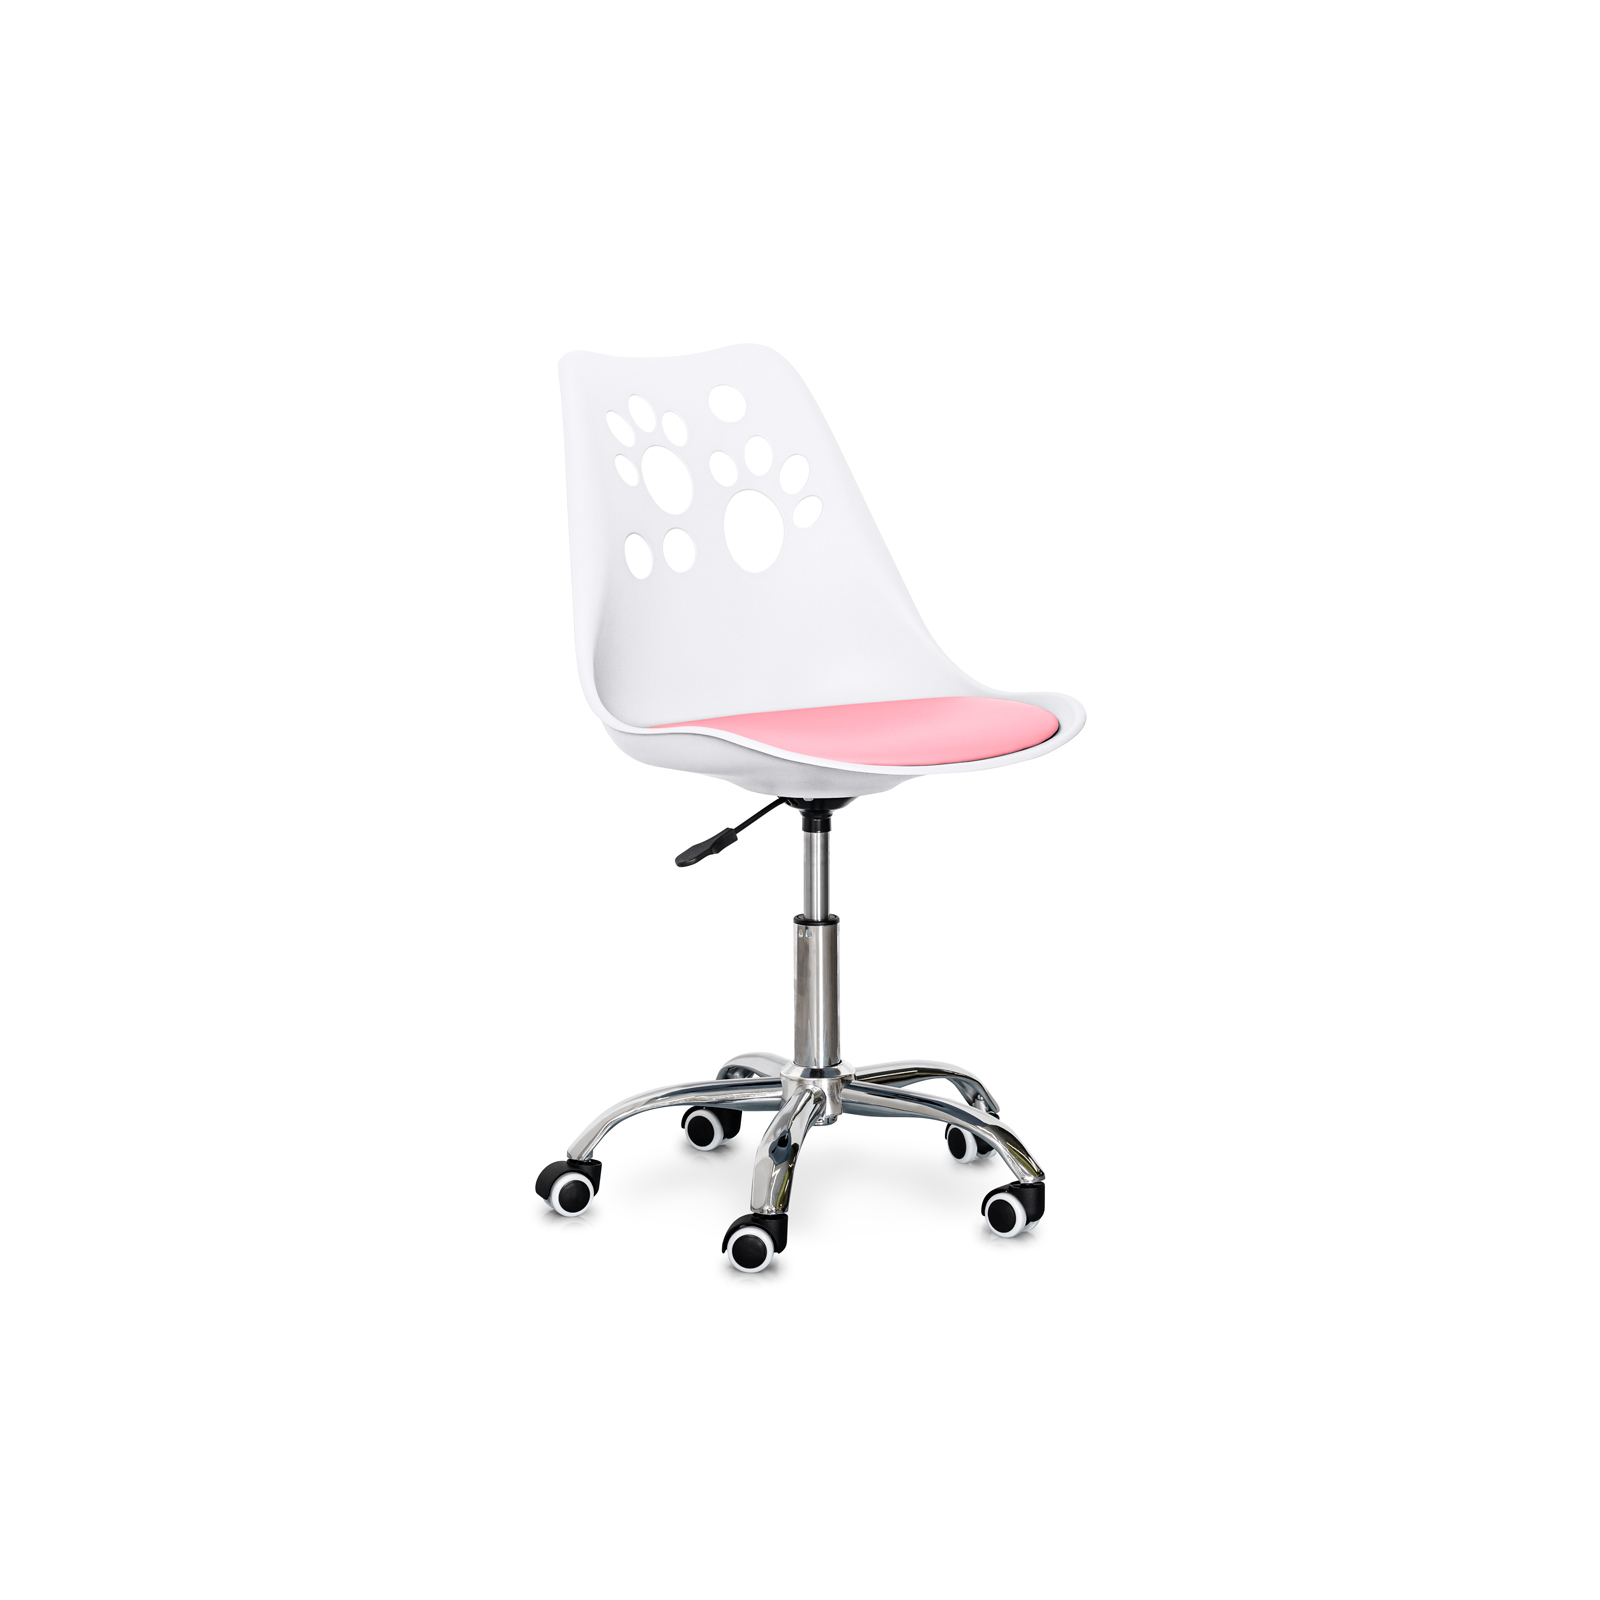 Дитяче крісло Evo-kids Indigo White / Pink (H-232 W/PN)